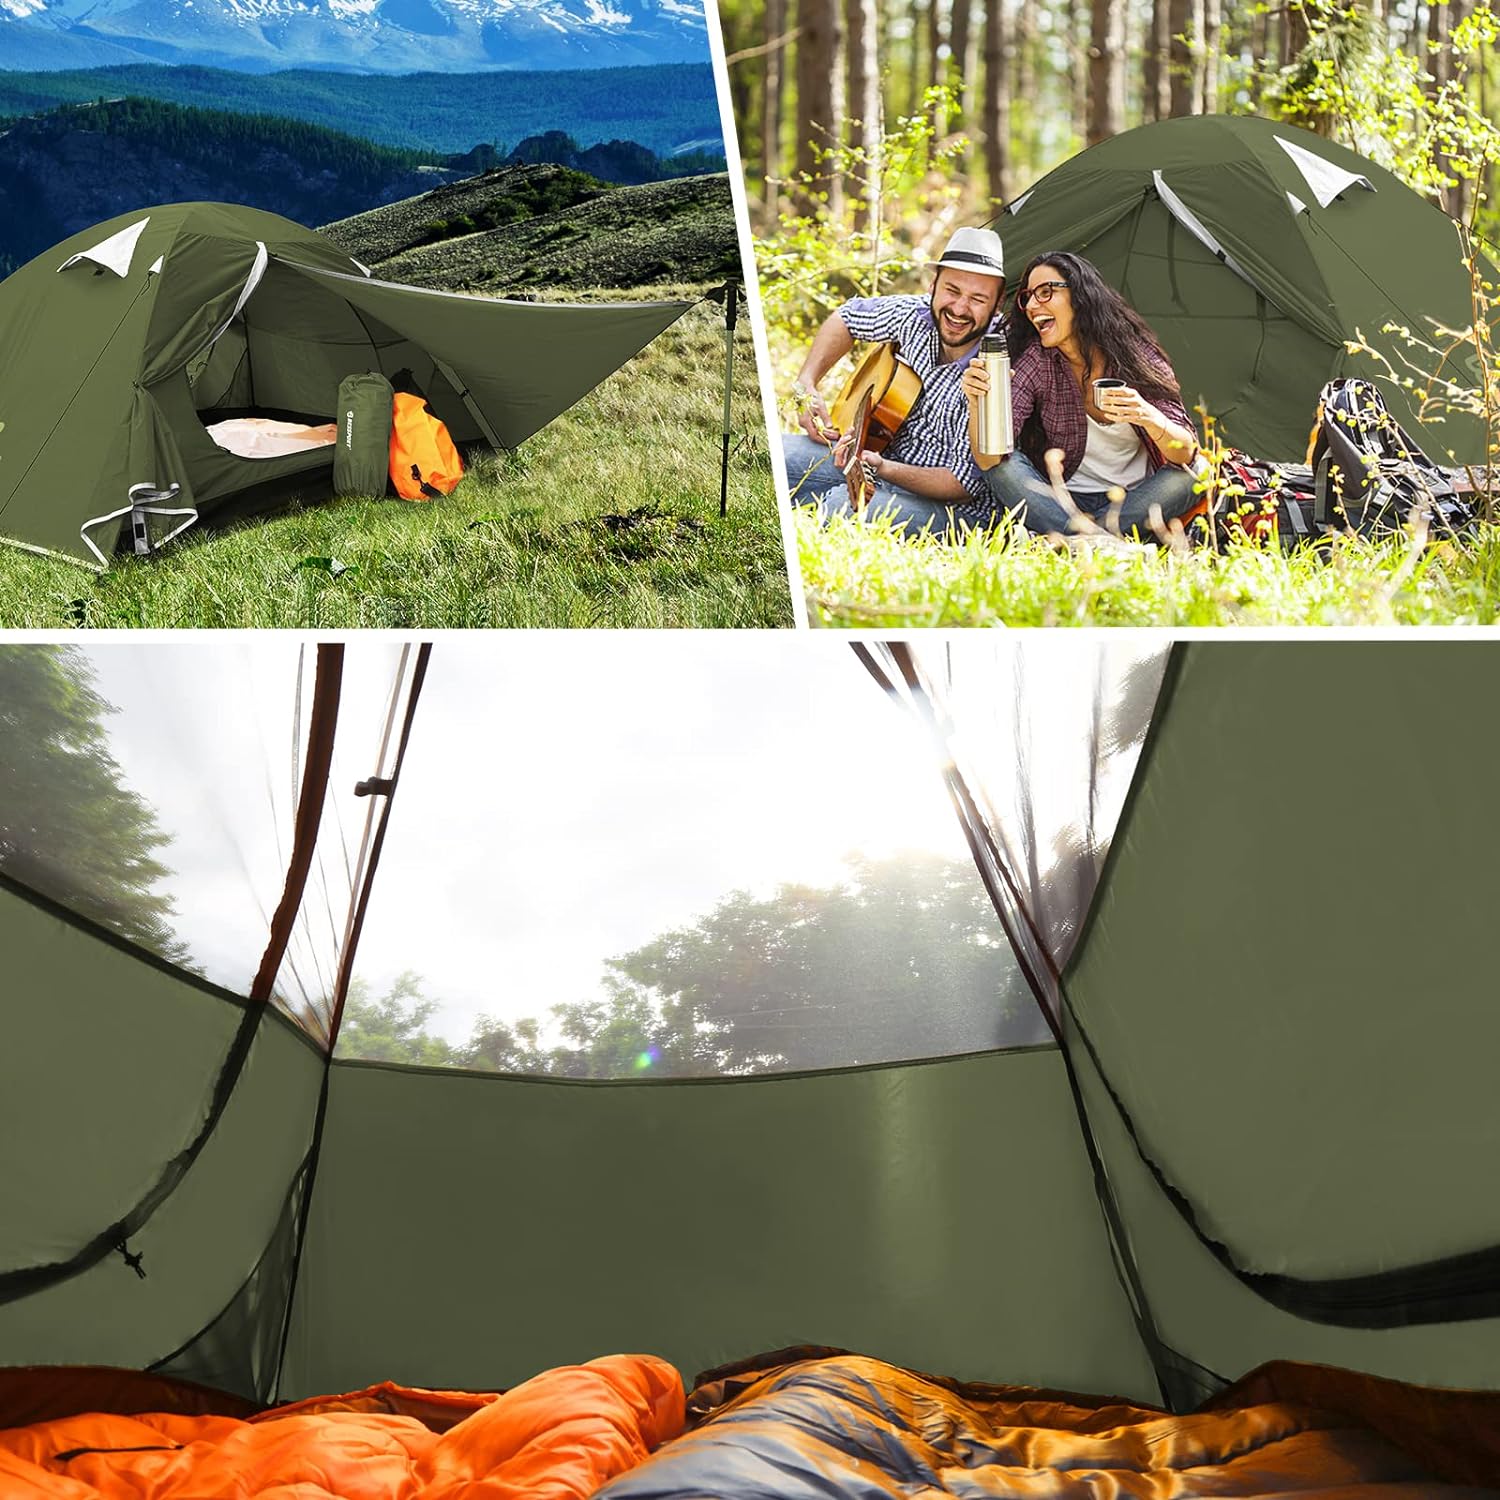 Bessport Camping Tente,1/2/3 Personnes Ultra Légère Tente Facile à Installer Tentes Dôme Tente 4 Saison Imperméable Ventilée pour Pique-Nique Randonnée Camping. - fitnessterapy